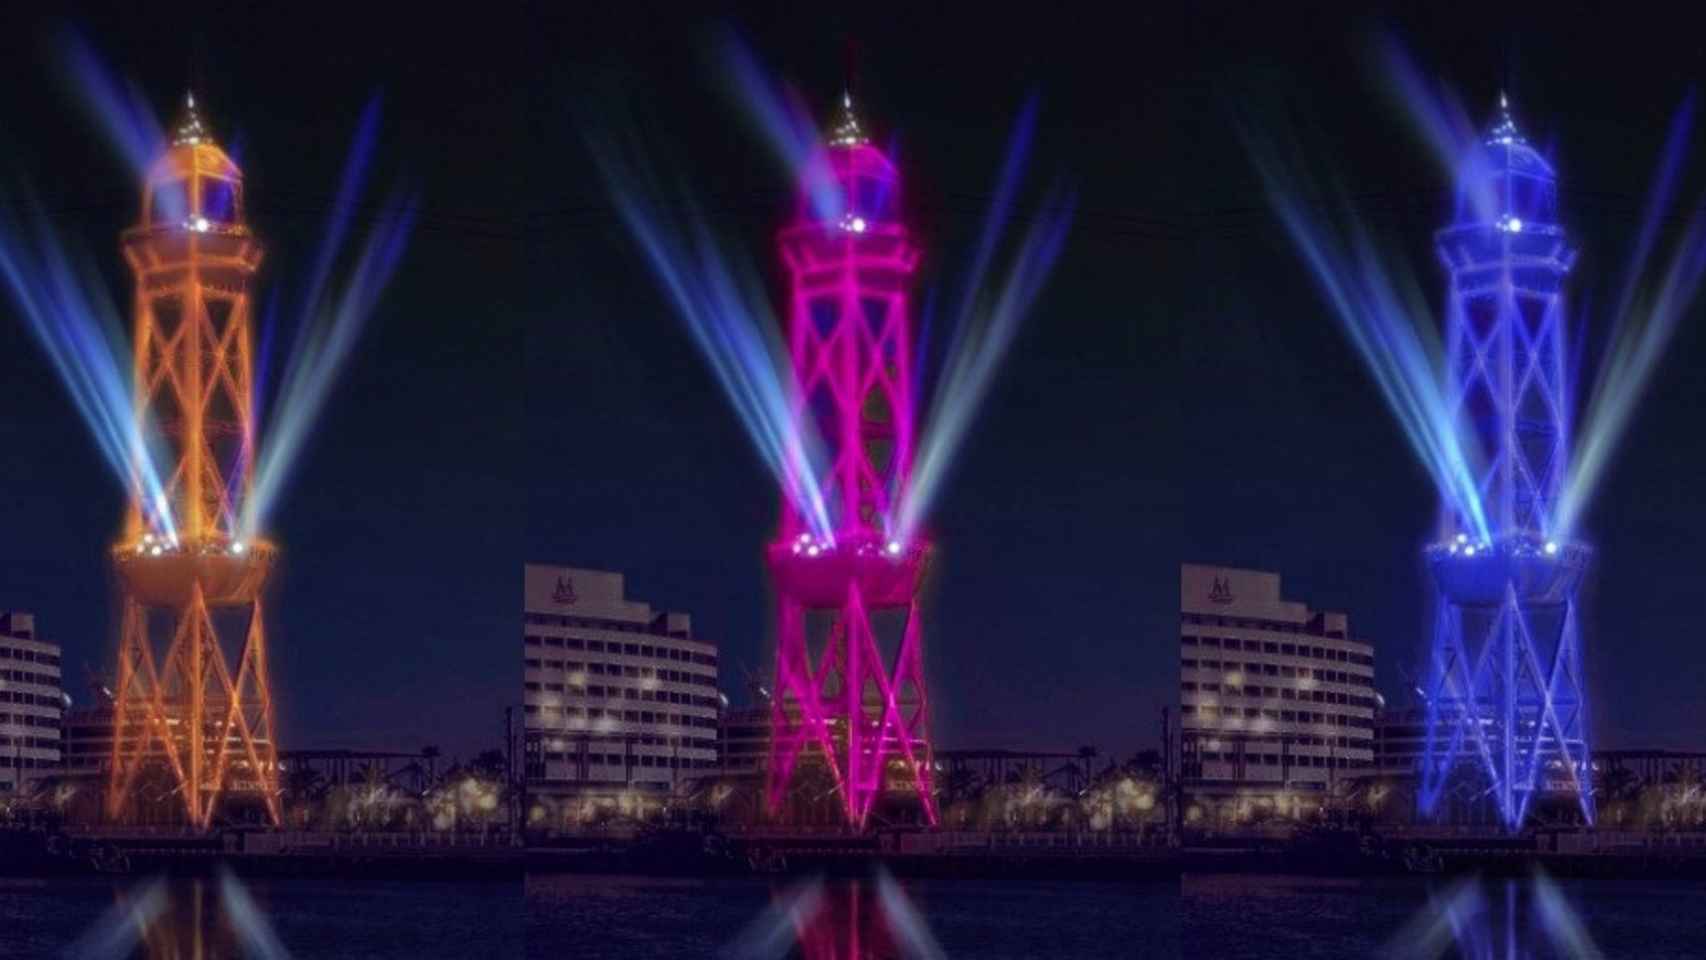 Simulación del espectáculo de luz y música en la torre de Jaume I